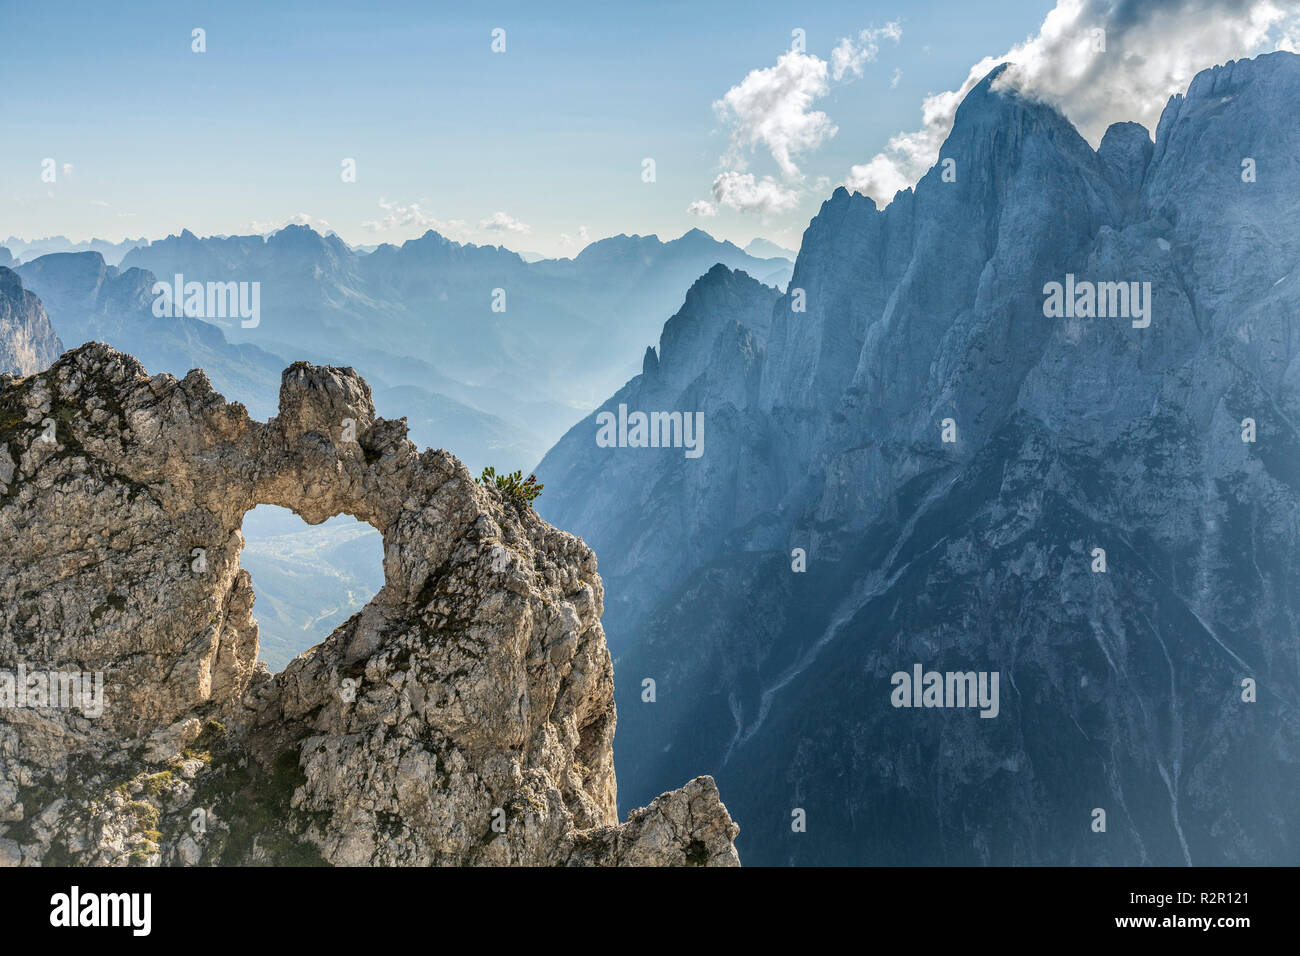 Europa, Italien, Venetien, Belluno, Agordino. Das Herz des Rock, eine natürliche Öffnung in der Form eines Herzens, Pala Gruppe, Dolomiten Stockfoto